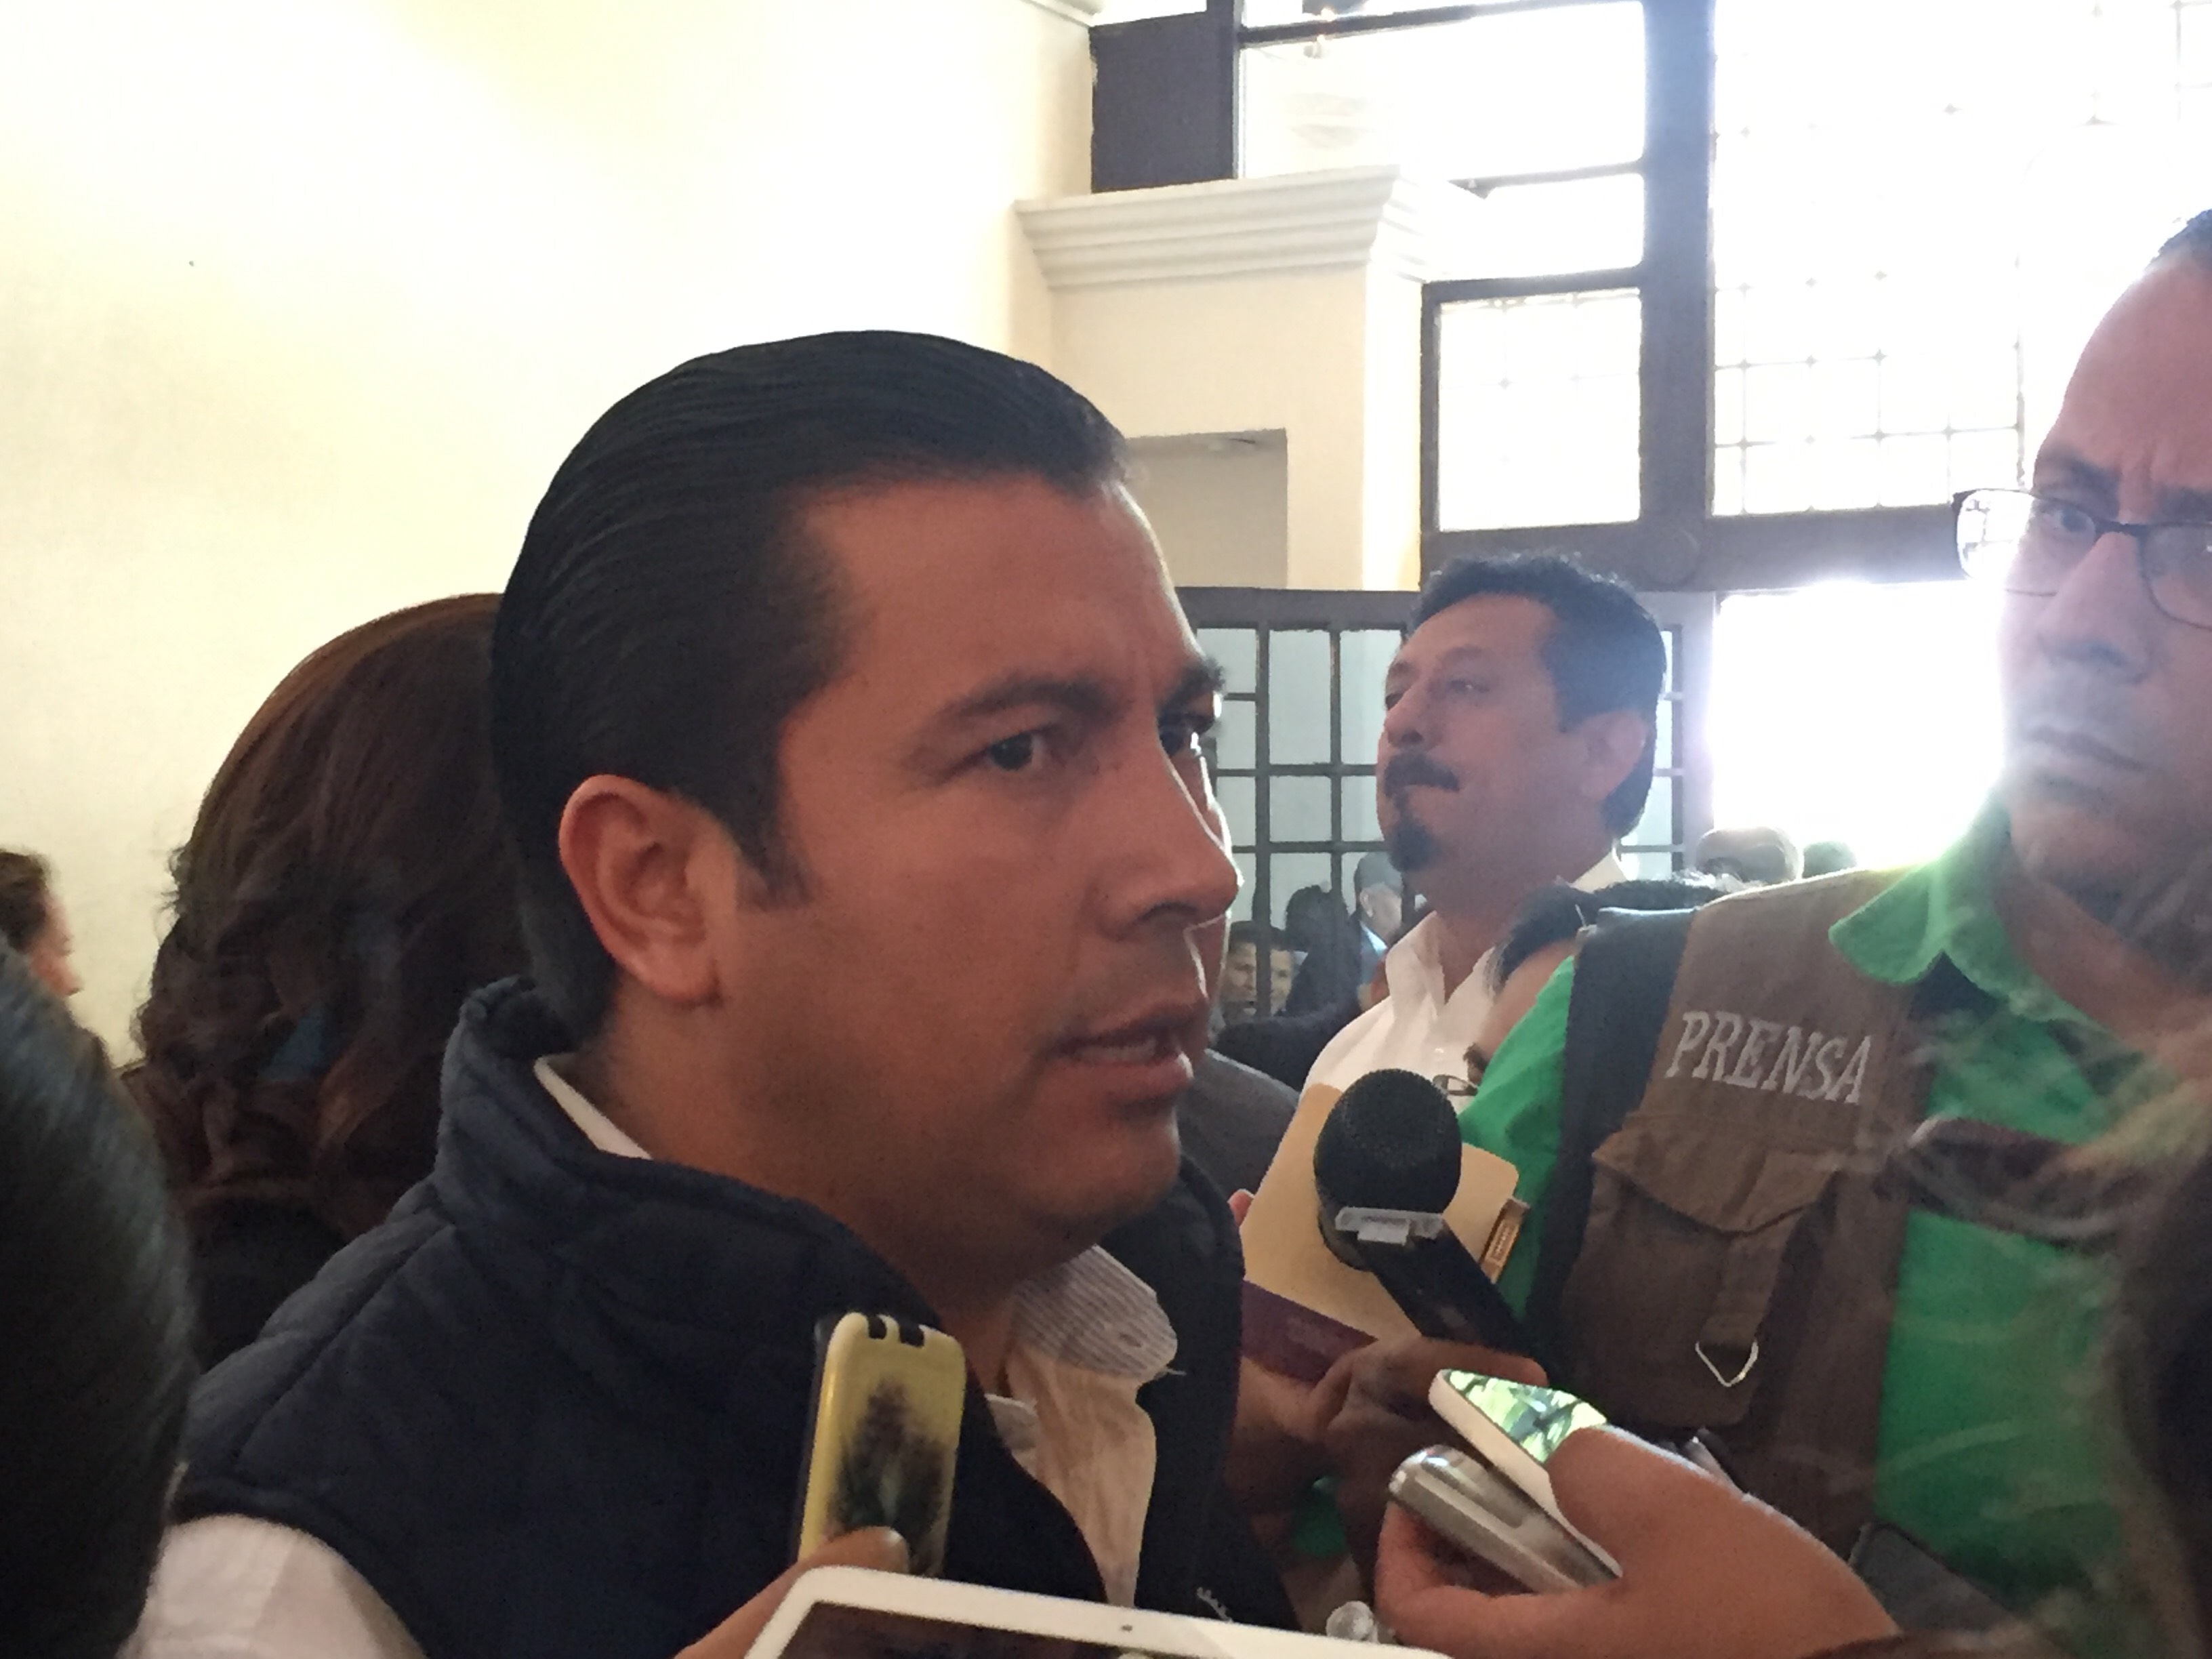  Reunión con vecinos de E. Montes será con total apertura al diálogo: Manuel Velázquez